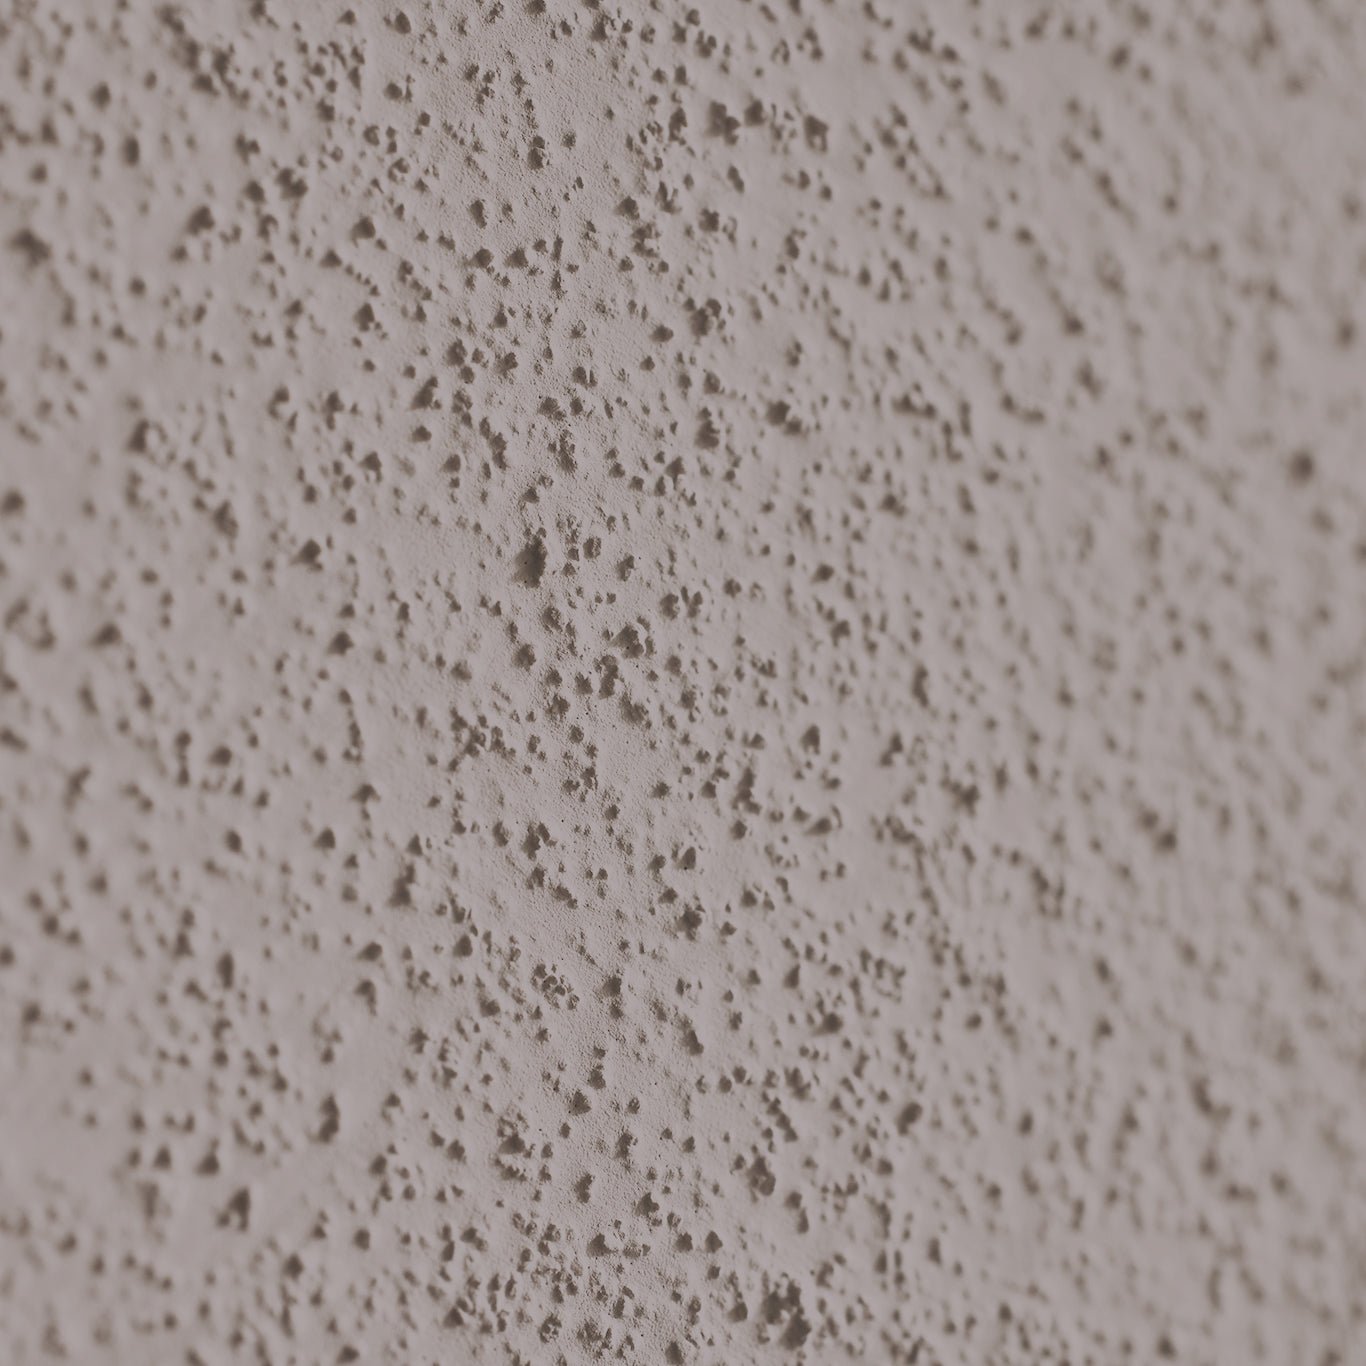 Amethyst wall scrub - SHADES by Eric Kuster